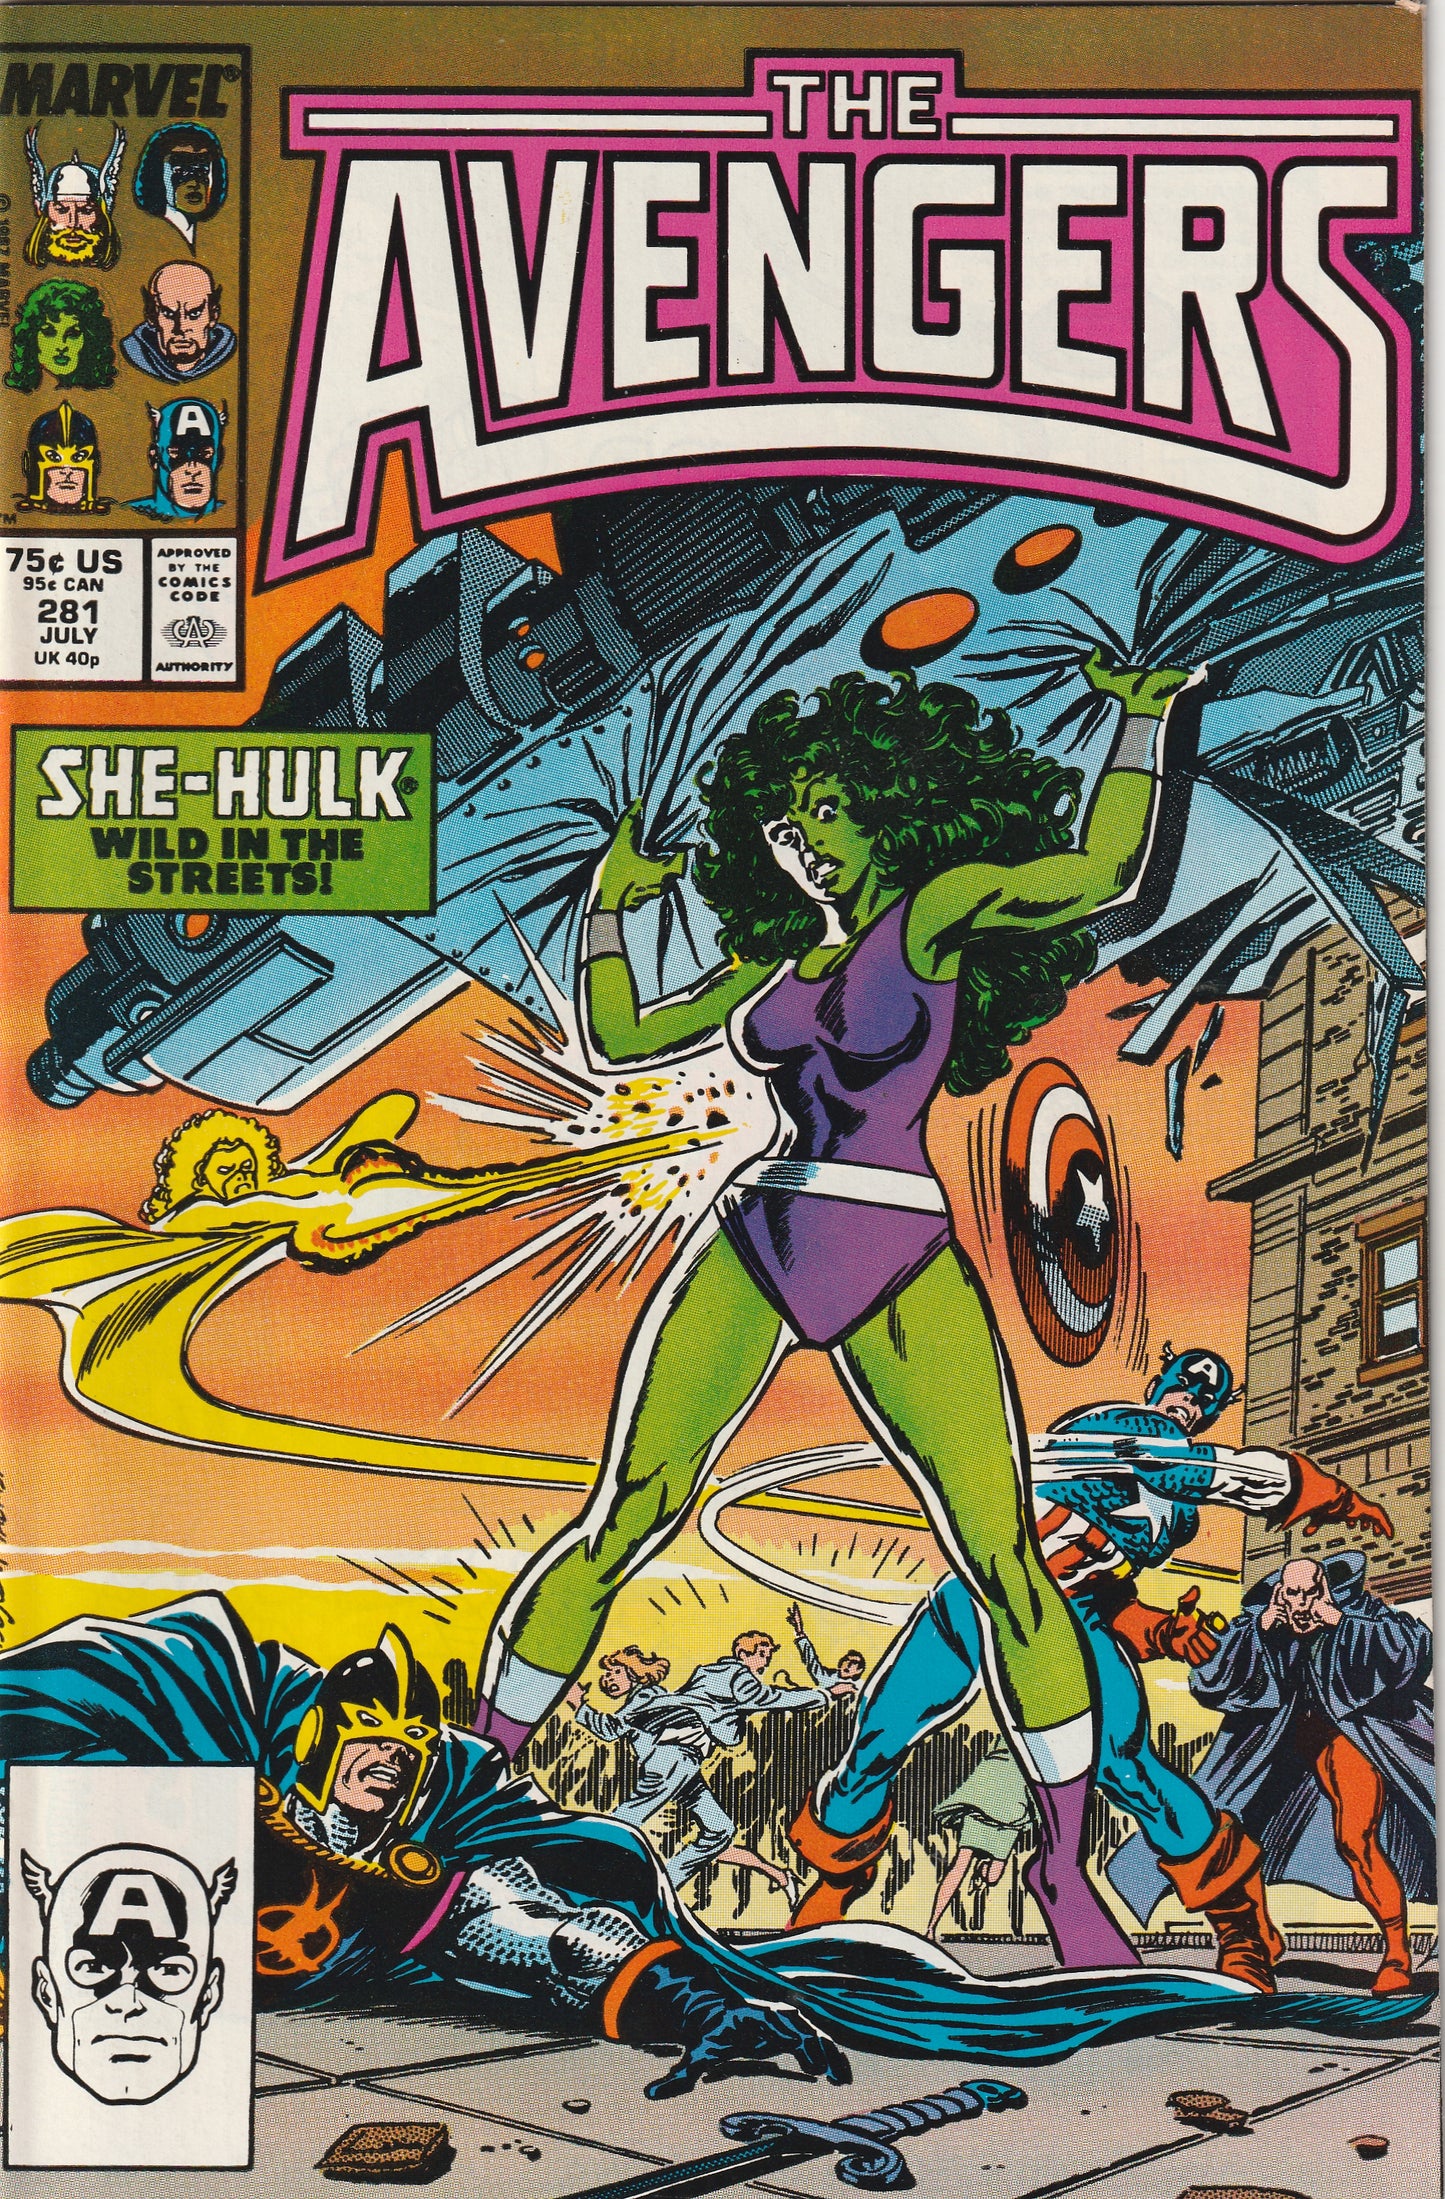 Avengers #281 (1987) - She-Hulk cover